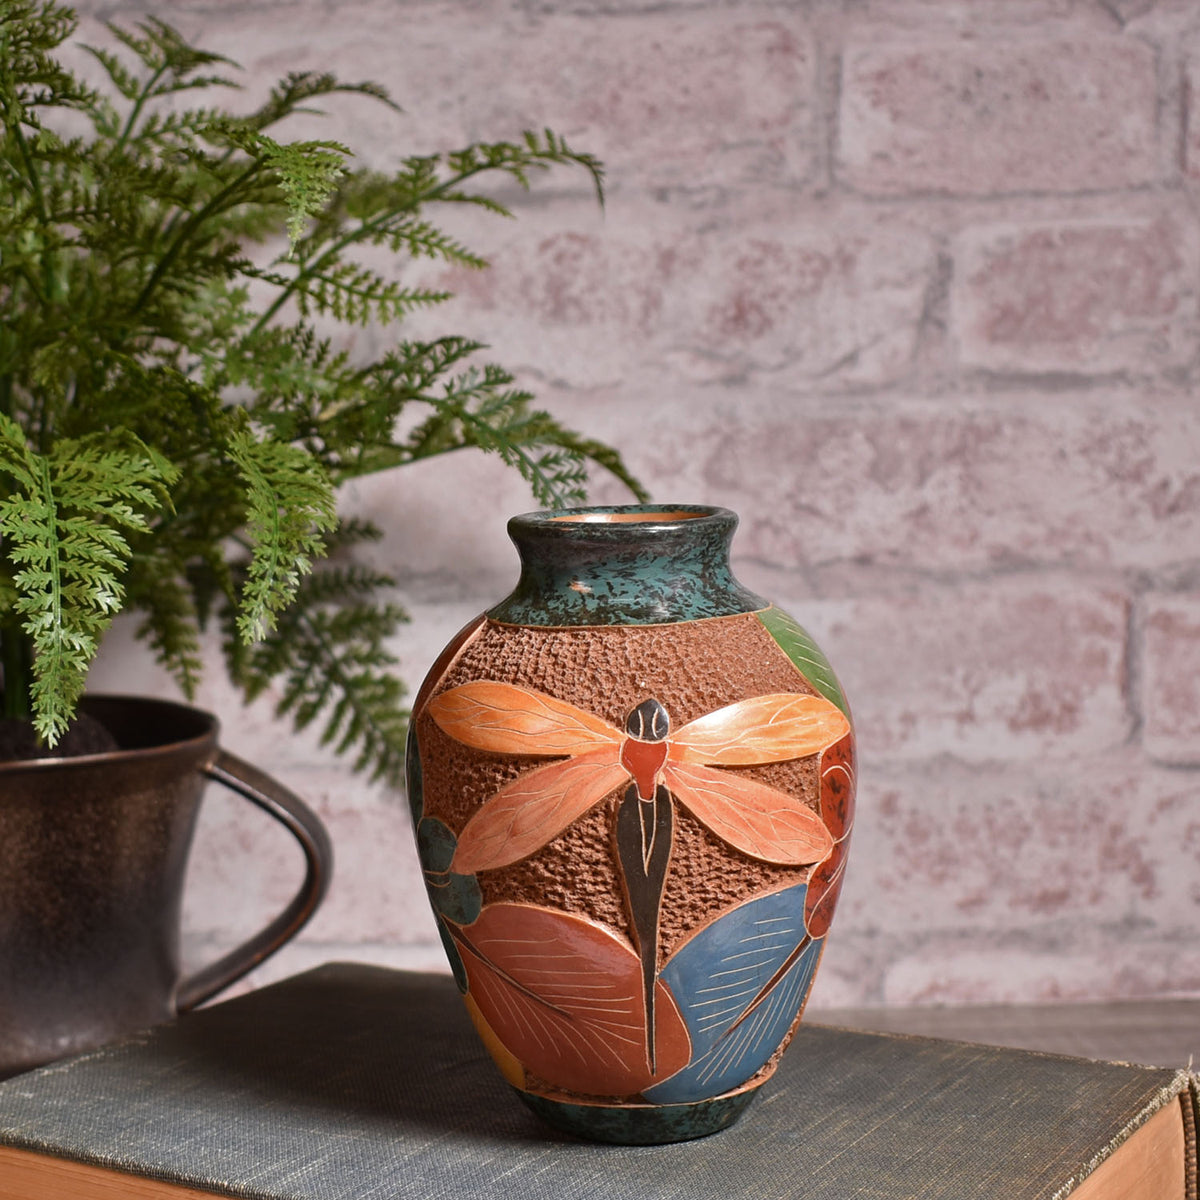 Heart Garden Soapstone Pen Cup Vase, Handcrafted in Kenya, Purple